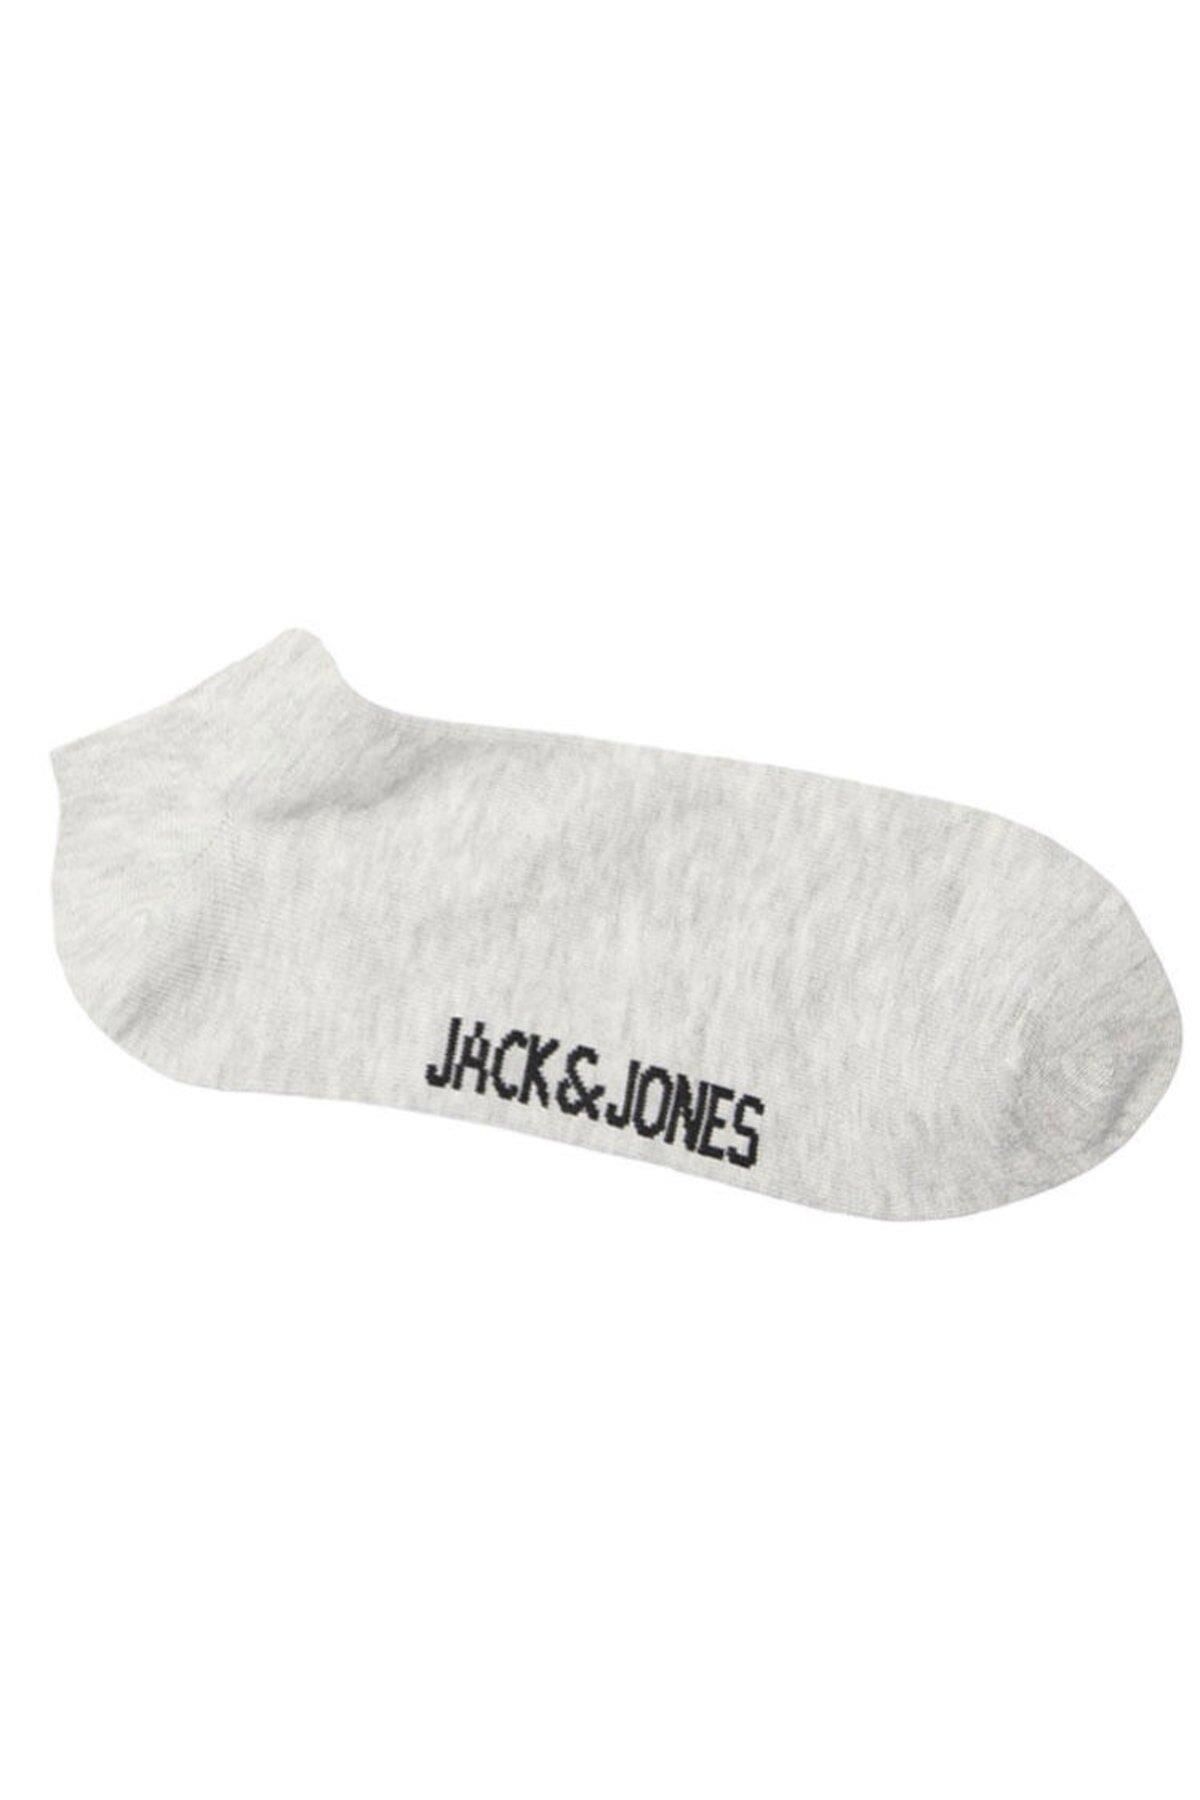 Jack & Jones Jack Jones Dongo Short Men's Sock Noos 12066296